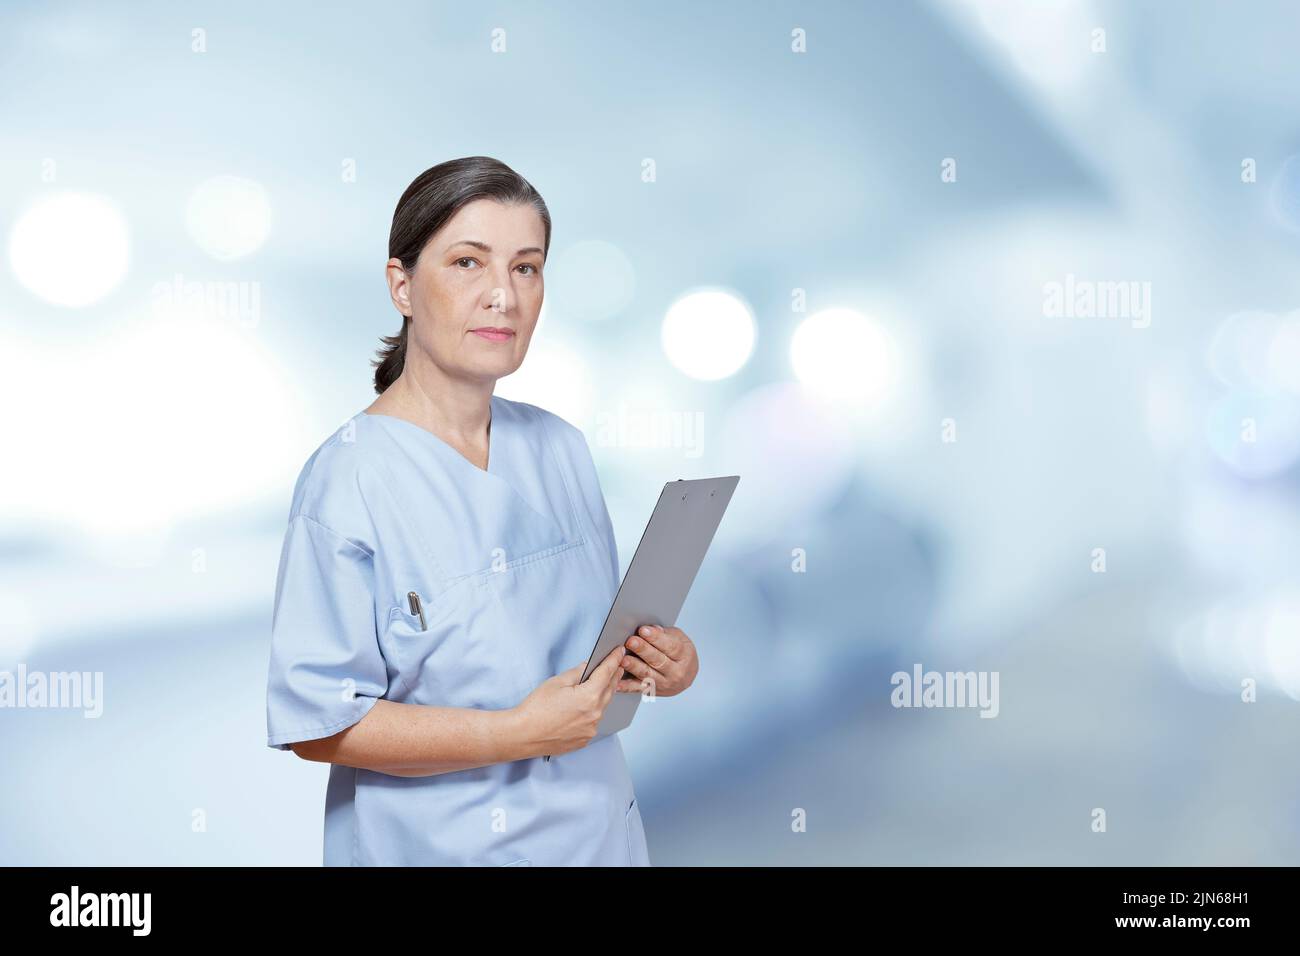 Retrato de una enfermera más vieja en un matorral azul que sostiene un sujetapapeles, fondo interior del hospital, efecto de filtro azul. Foto de stock